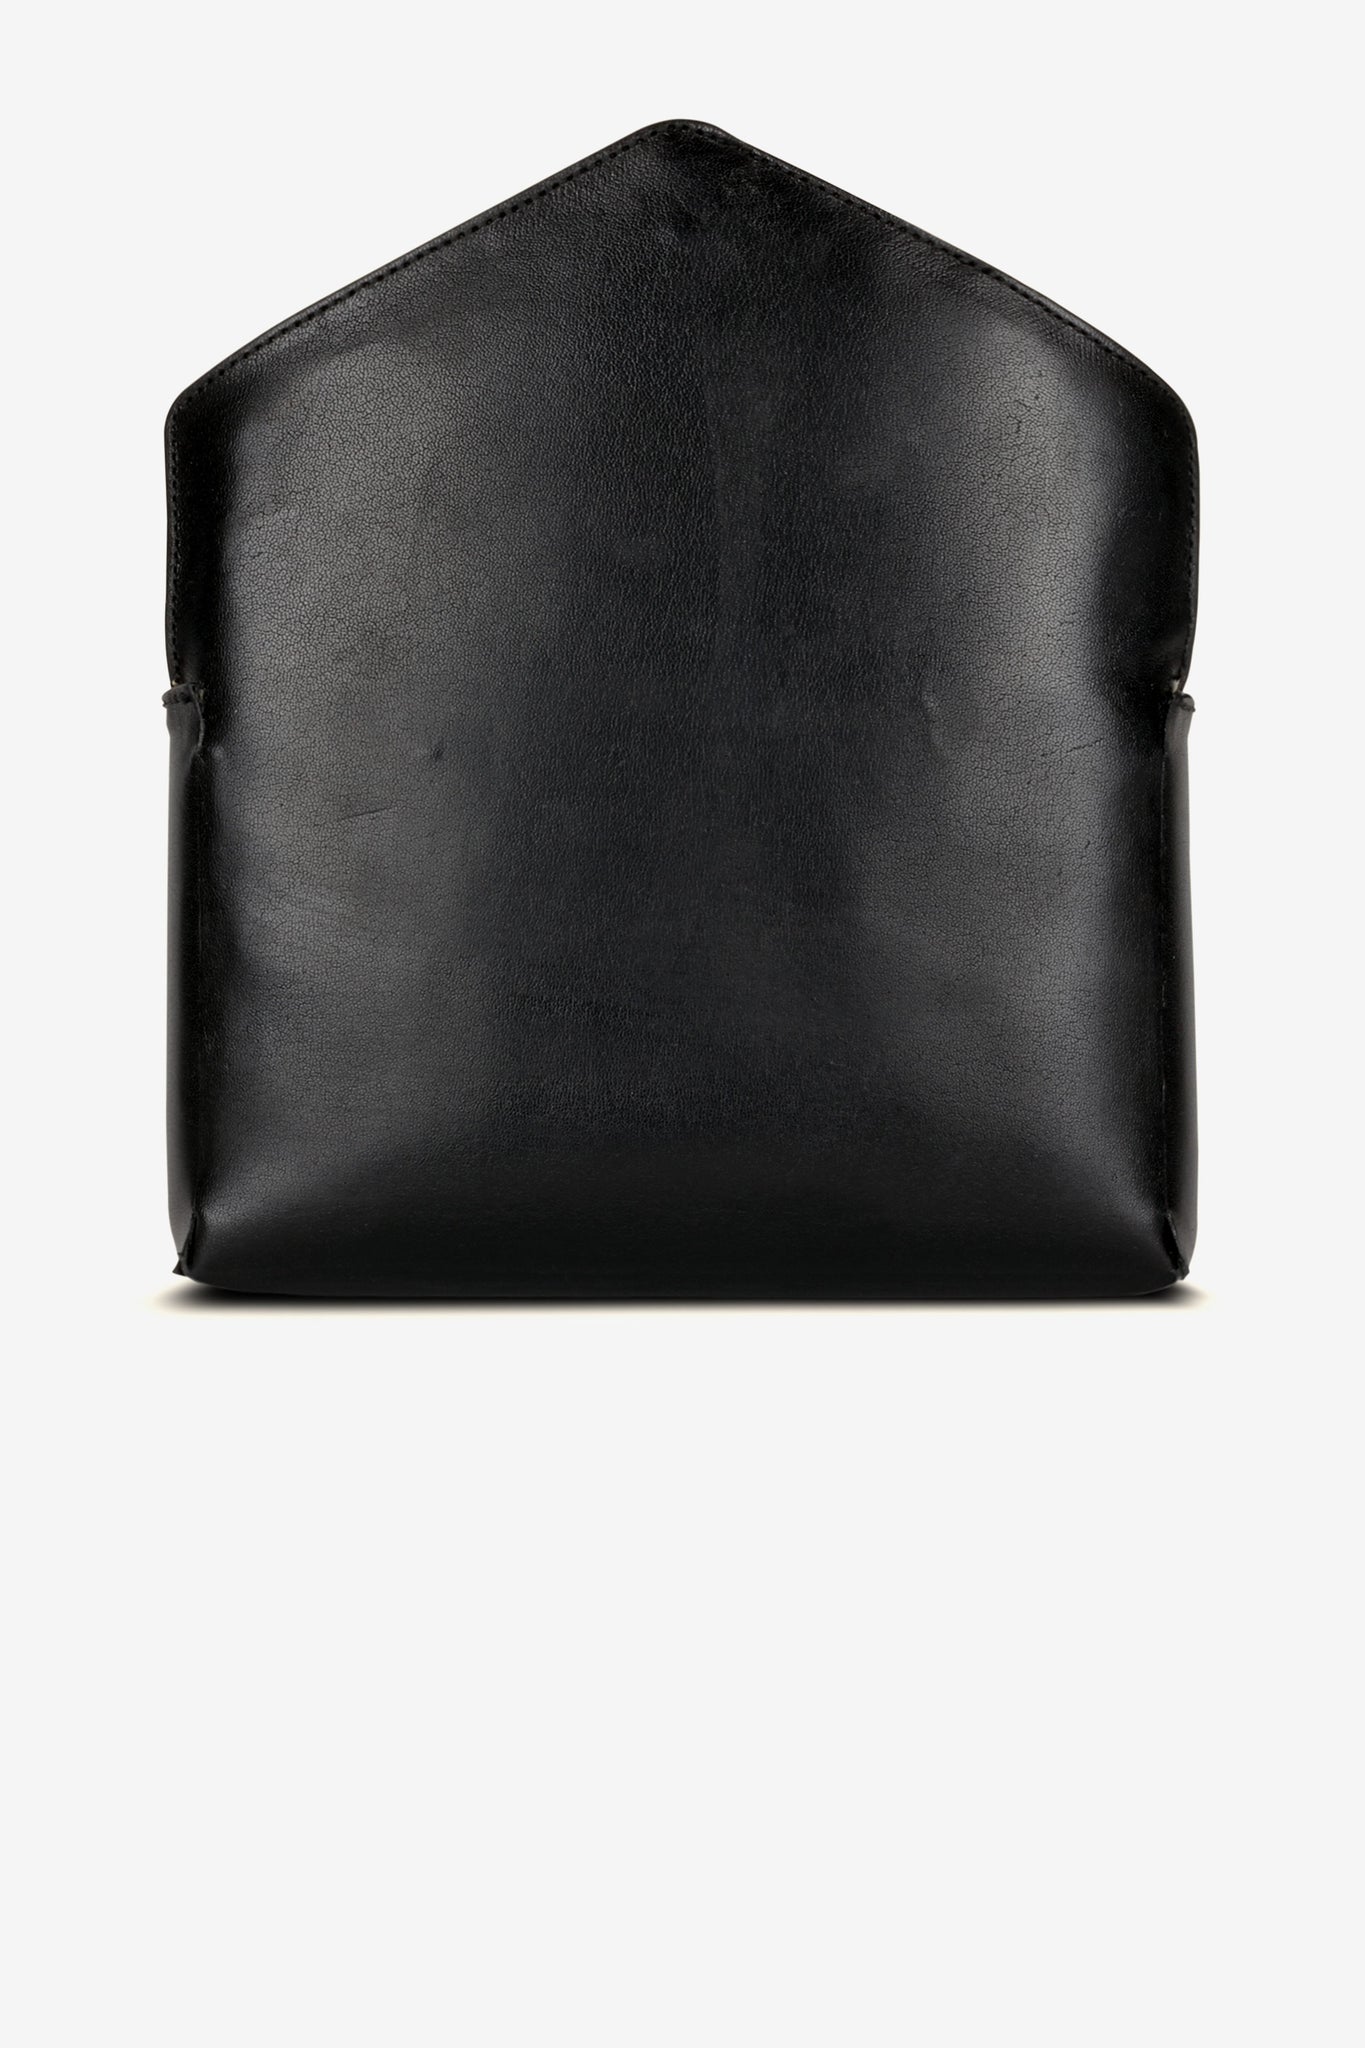 The Tuk Wallet, Large, Black